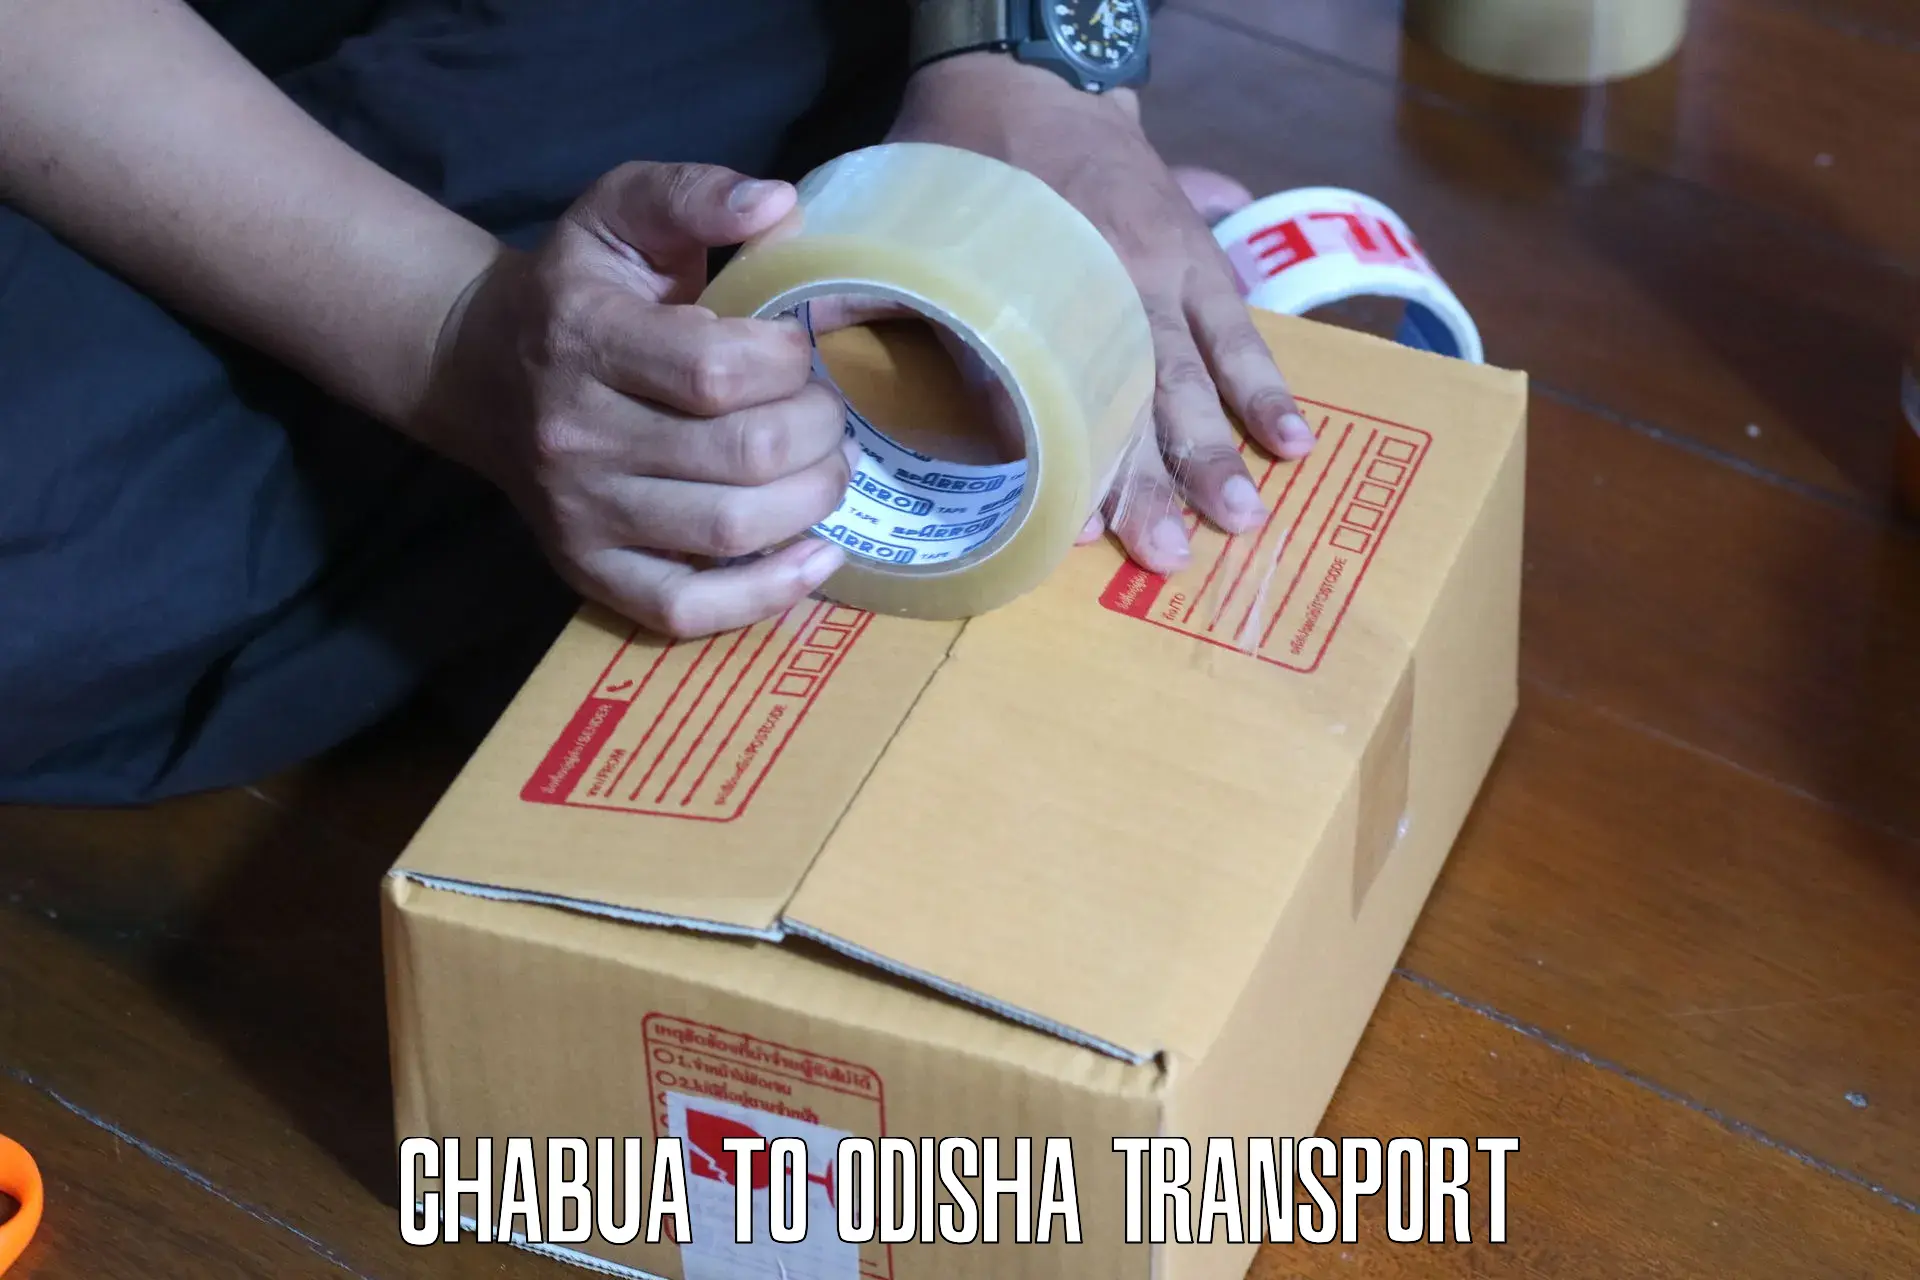 Truck transport companies in India Chabua to Sambalpur